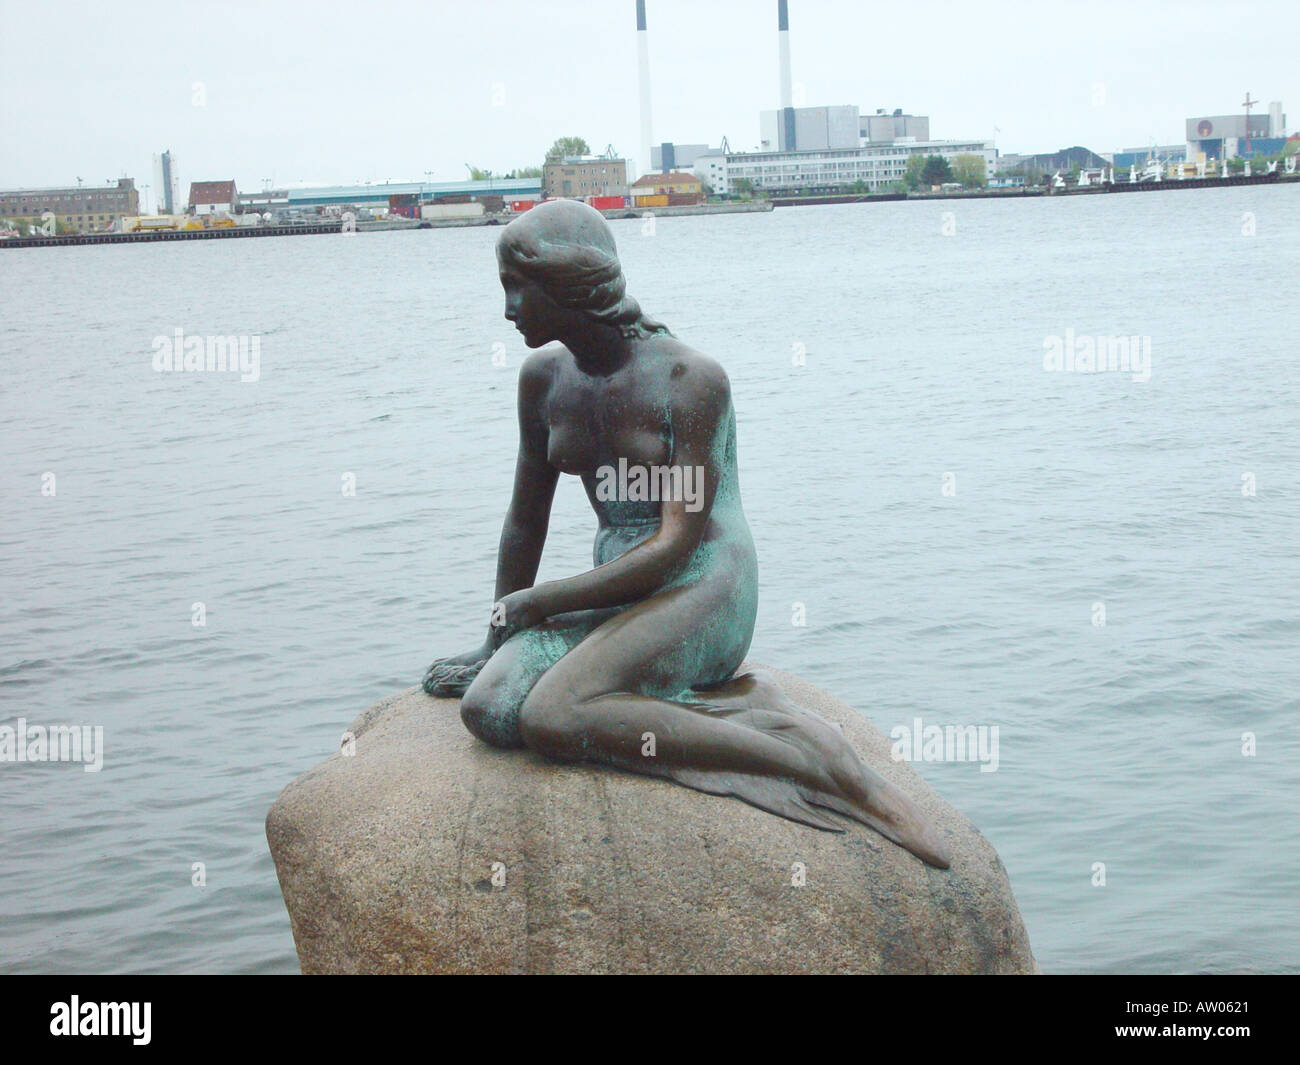 La petite sirène dans le port de Copenhague Danemark Banque D'Images